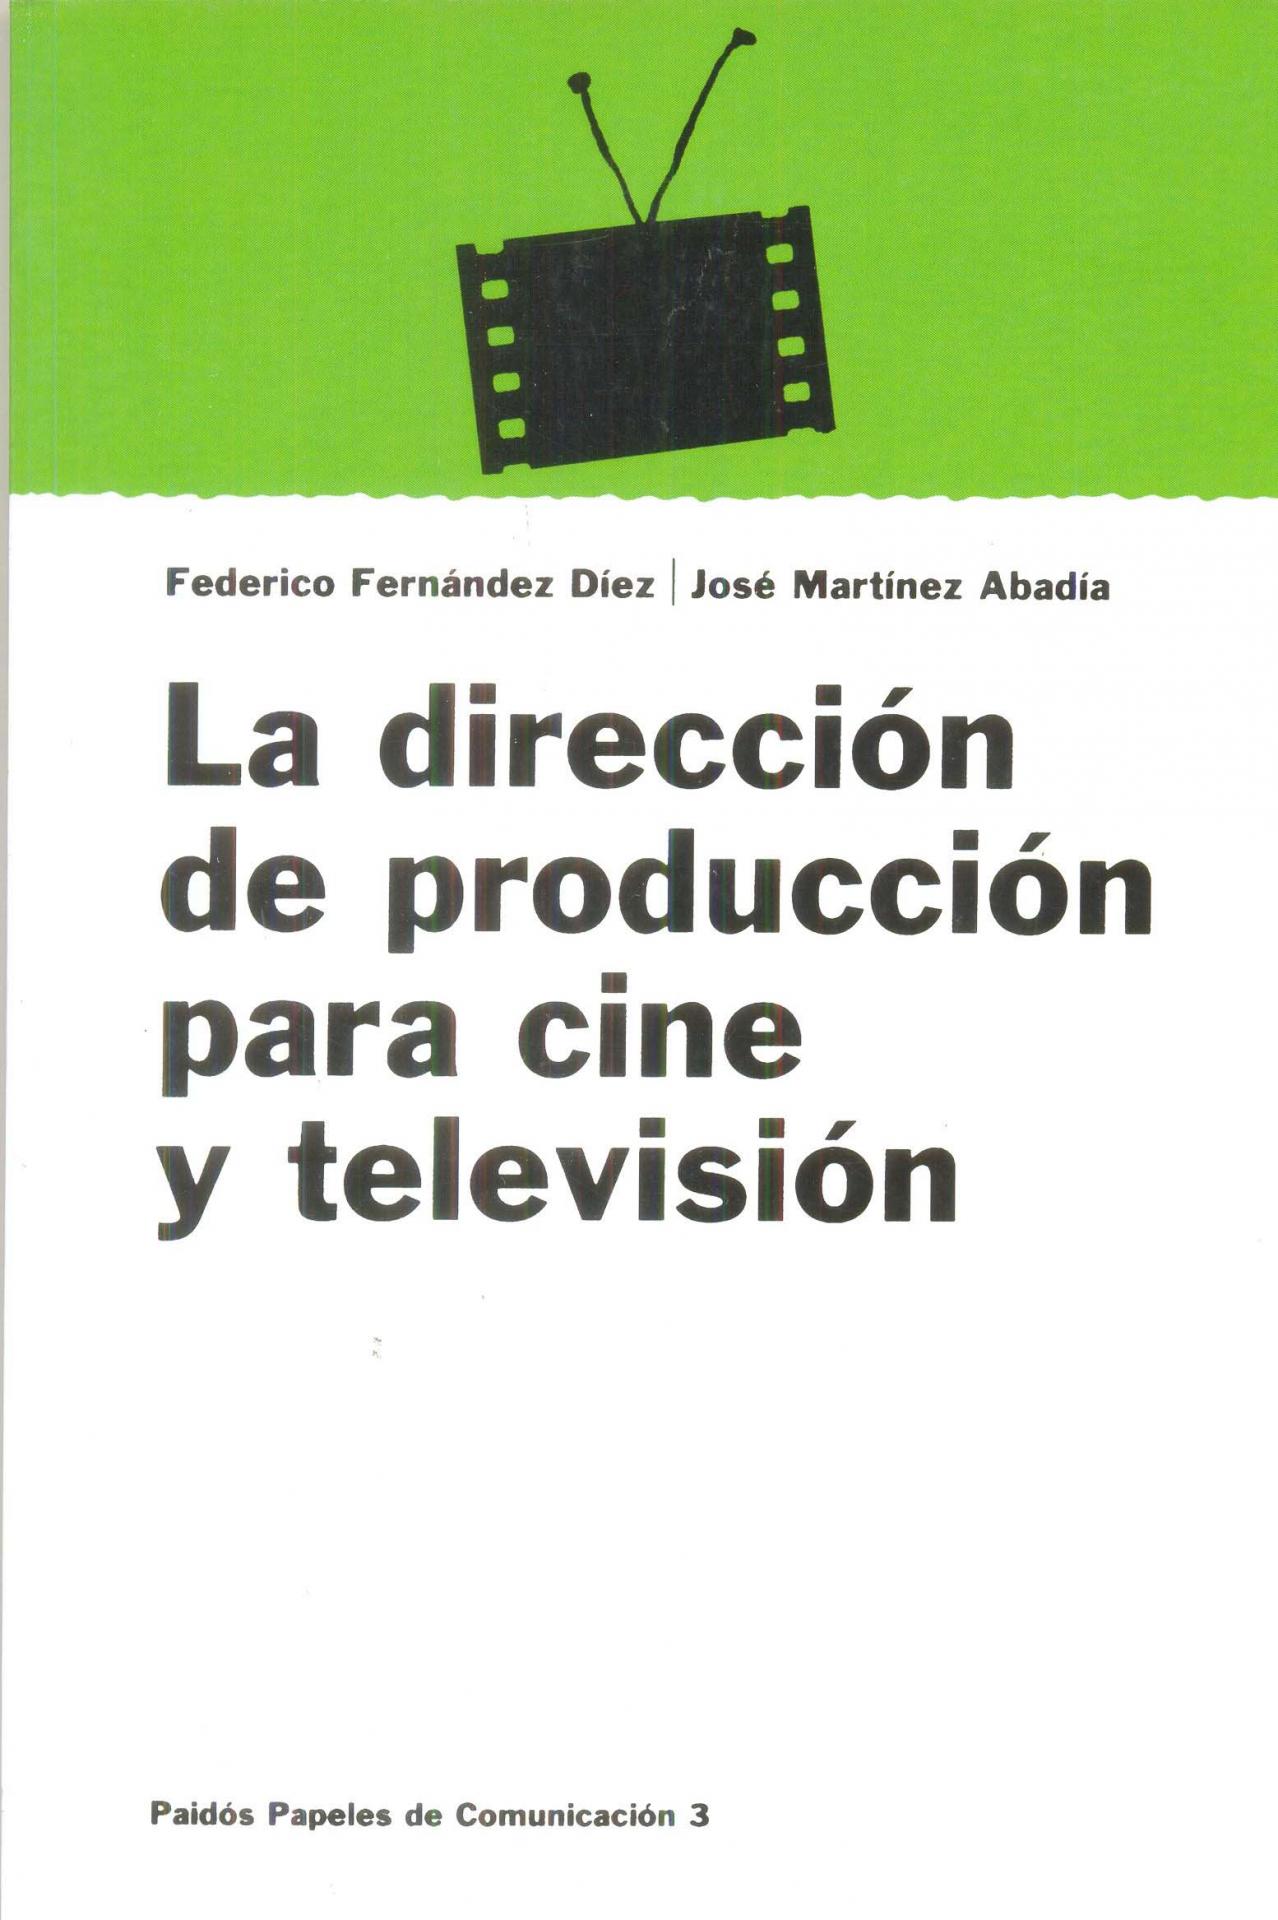 LA DIRECCIÓN DE PRODUCCIÓN PARA CINE Y TELEVISIÓN. Fernández Díez, F; Martínez Albadía, J.